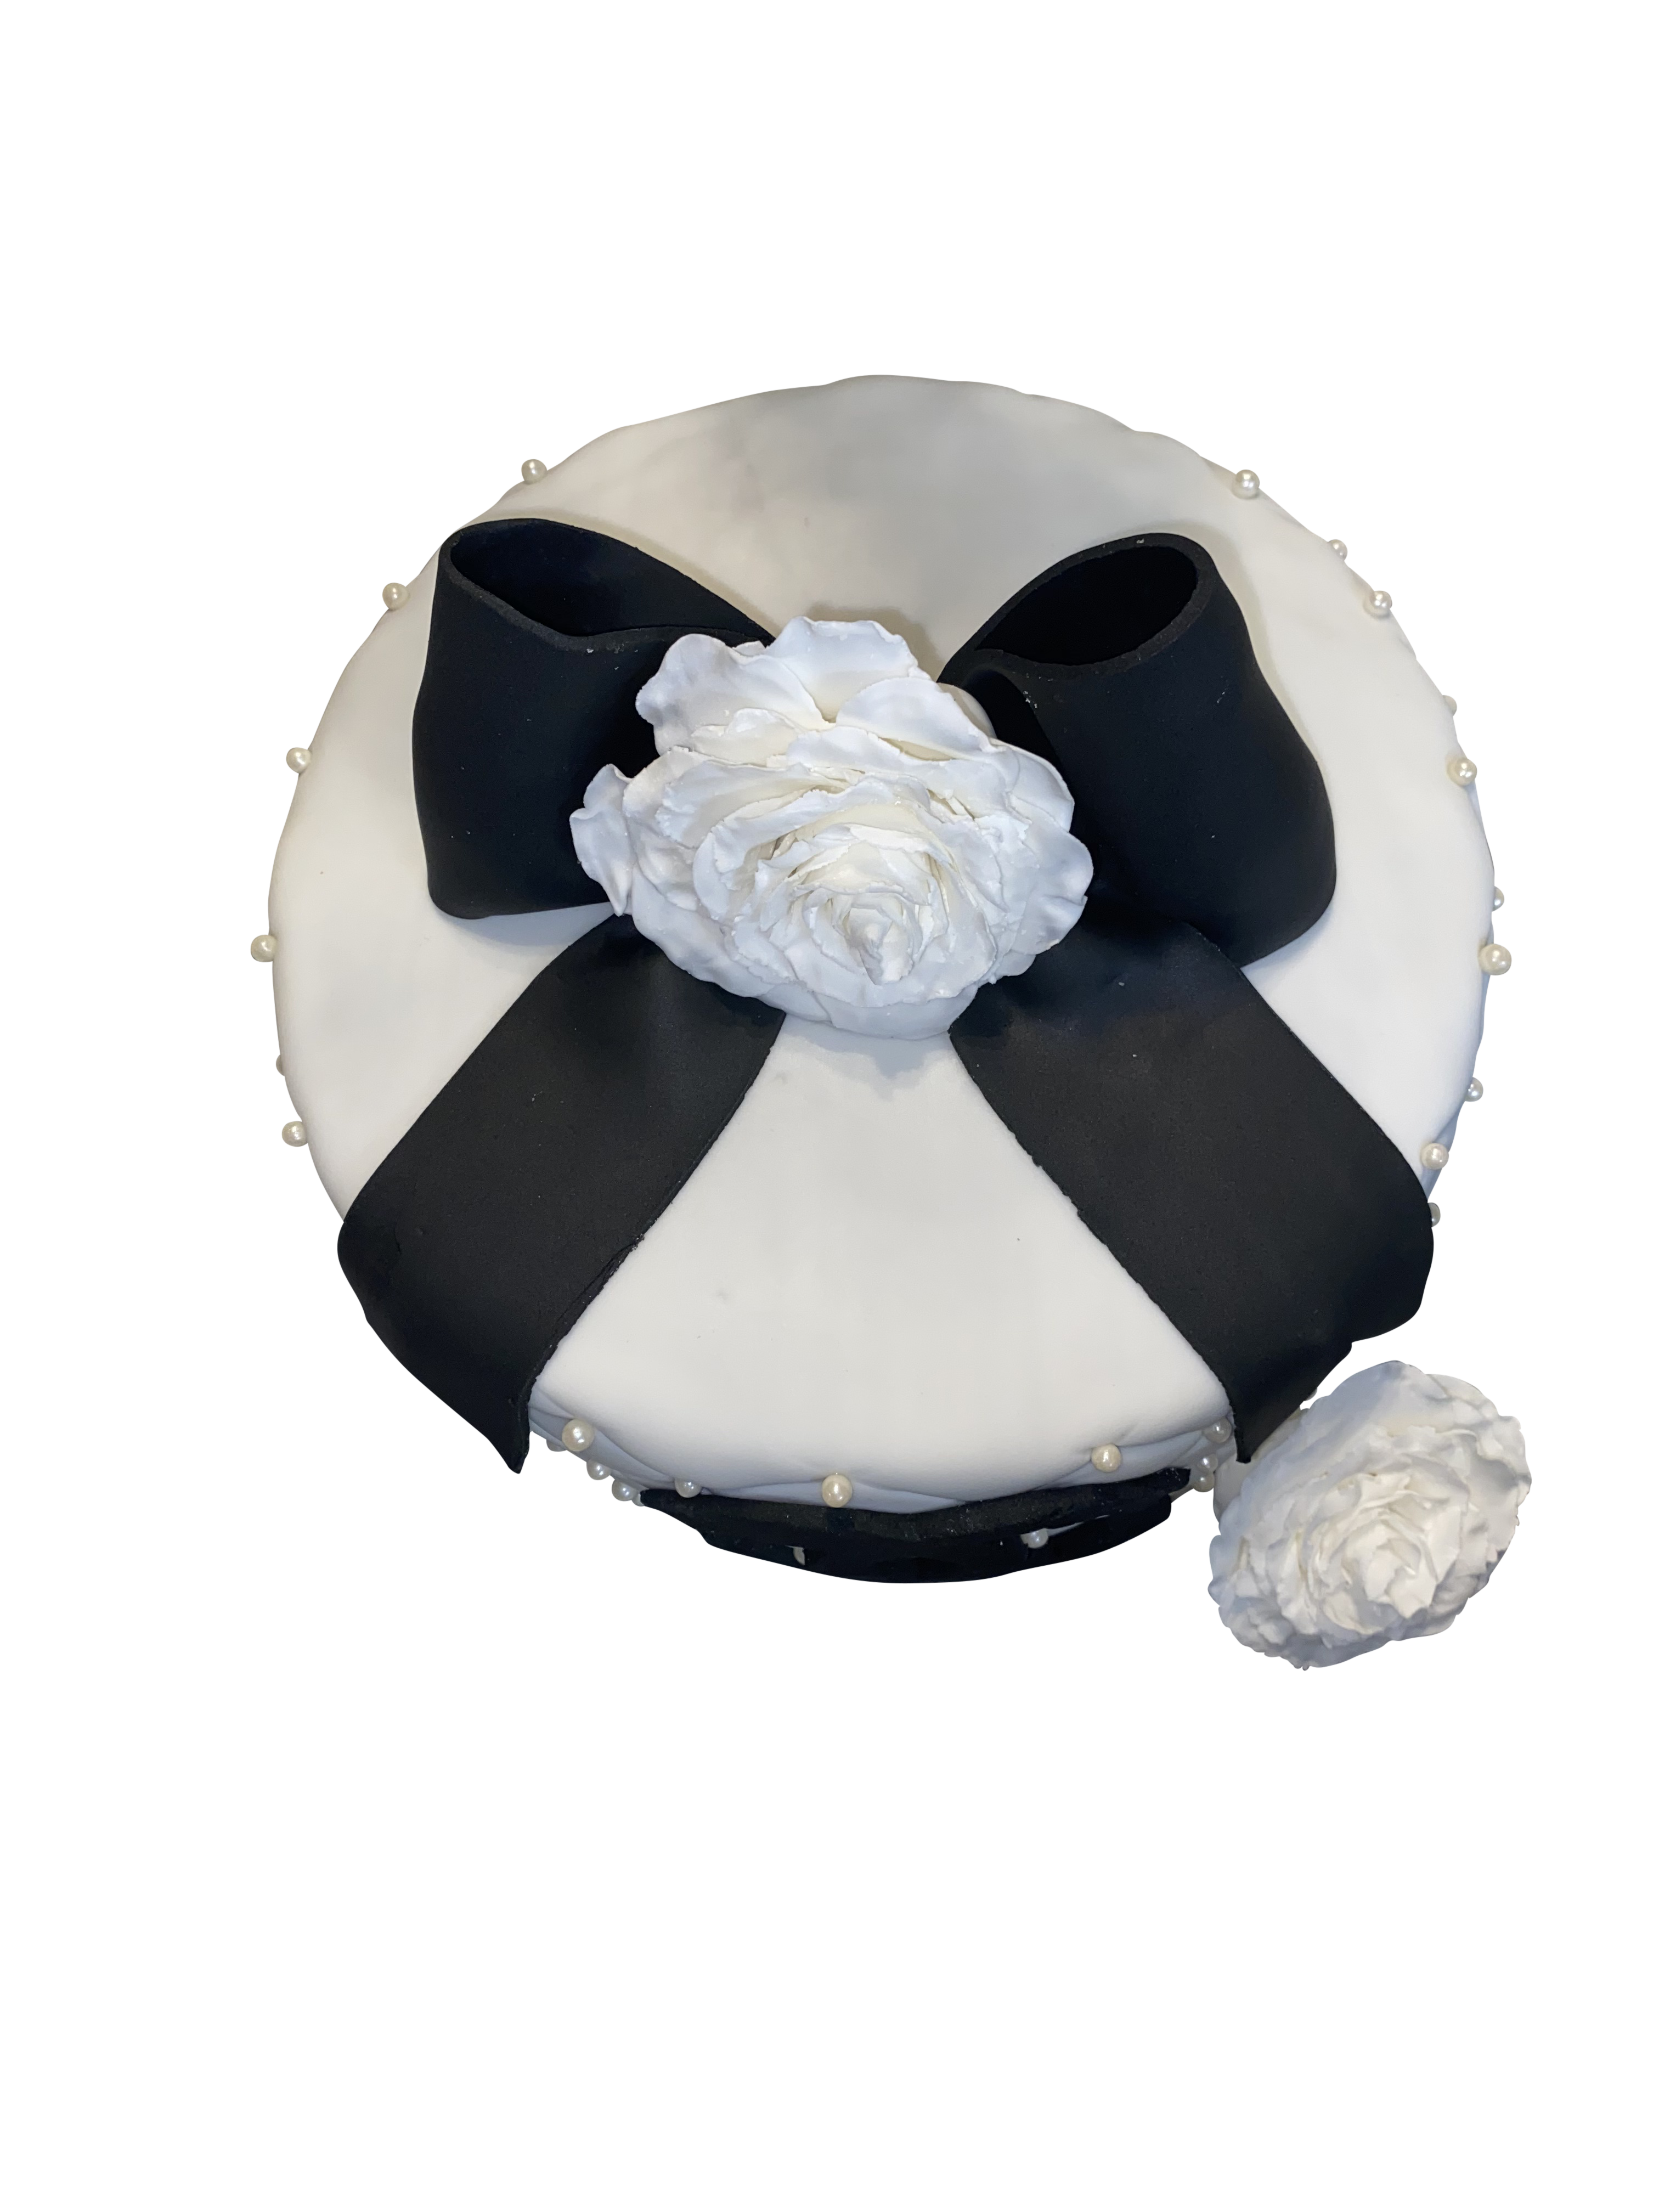 Chanel Designer Inspired Cake